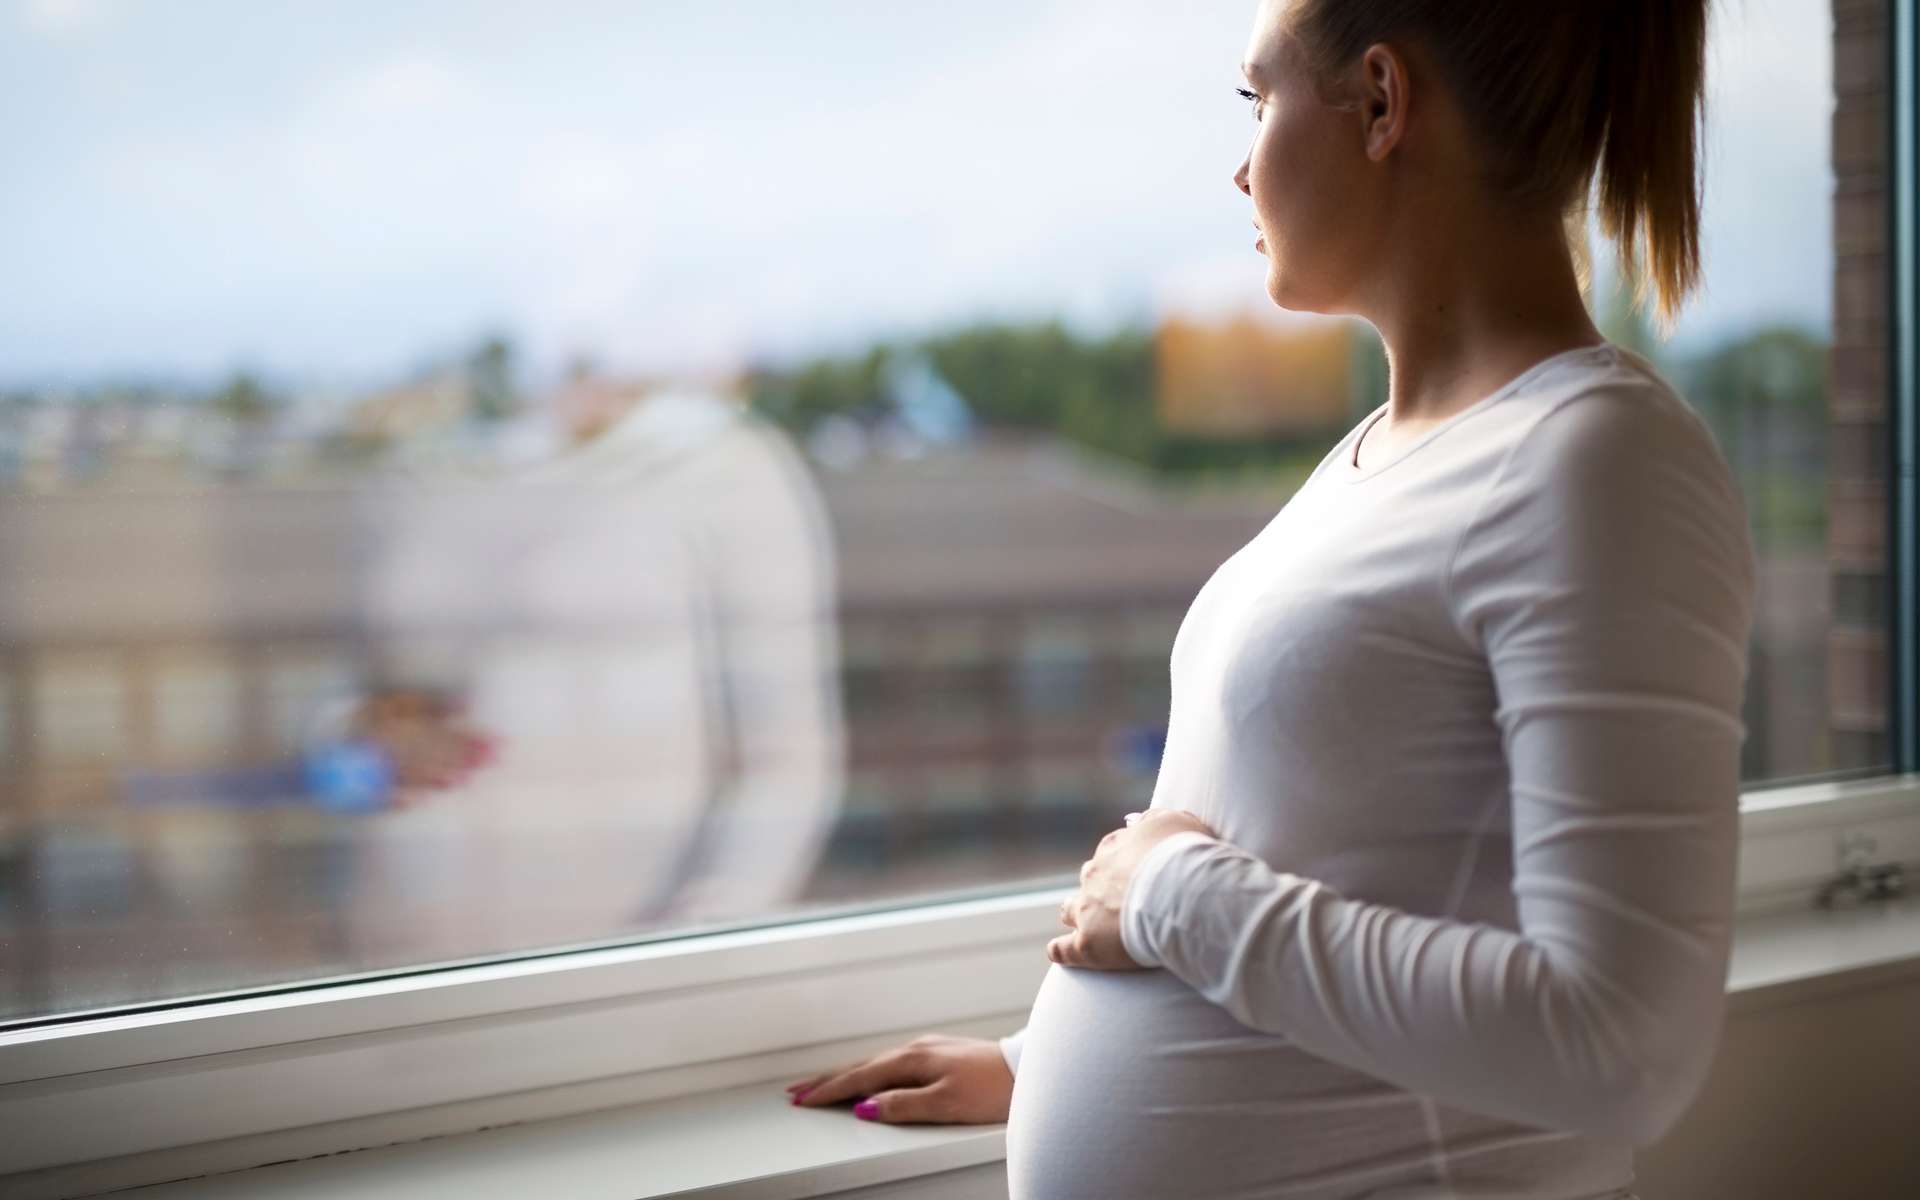 Le stress de la mère pendant la grossesse pourrait impacter le comportement de l'enfant à naître